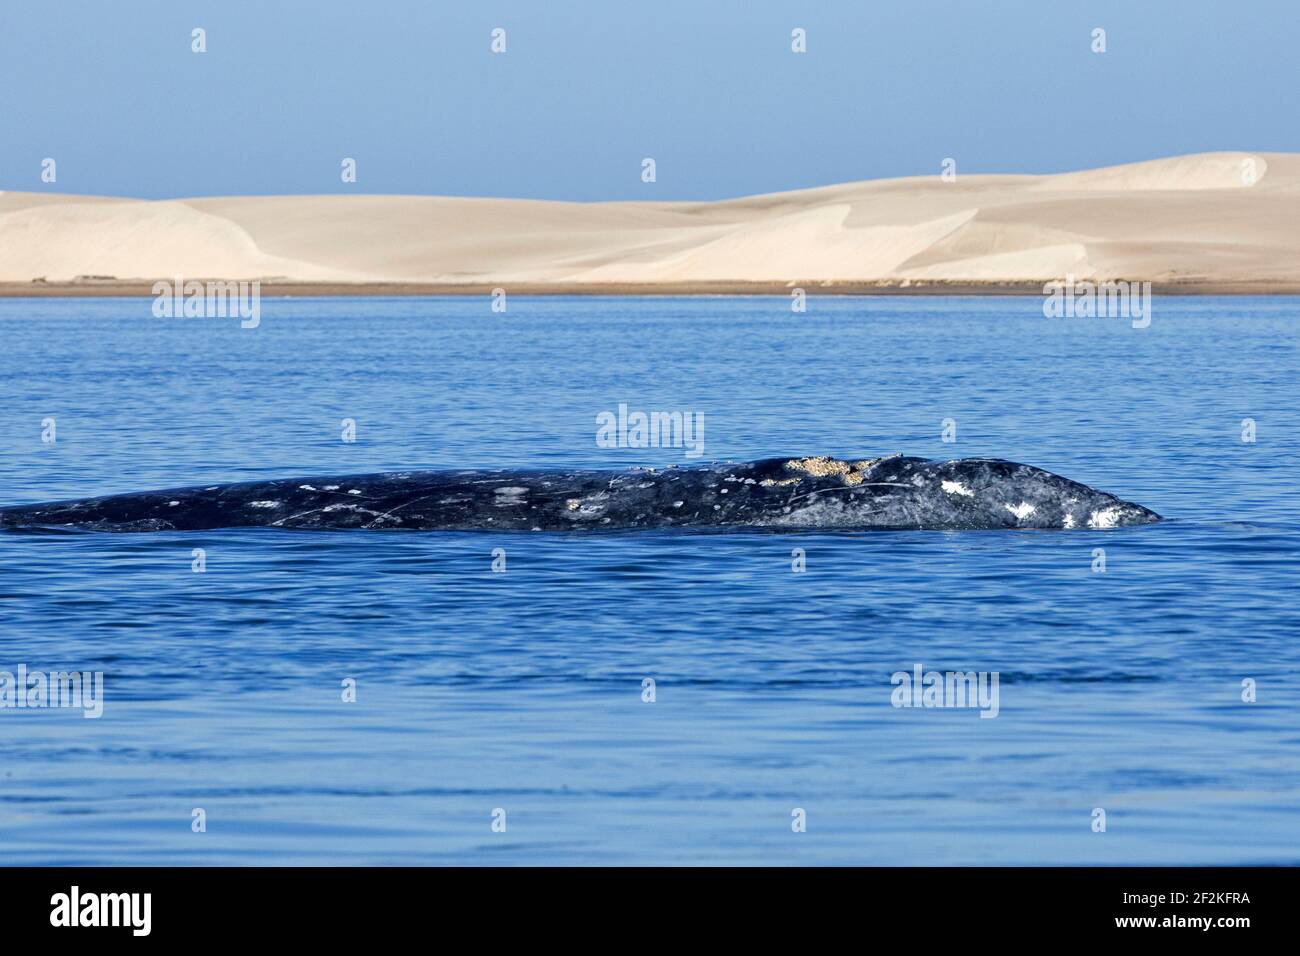 Ballena gris del Pacífico / ballena gris de California (Eschrichtius robustus) frente a Puerto Adolfo López Mateos, Baja California Sur, México Foto de stock